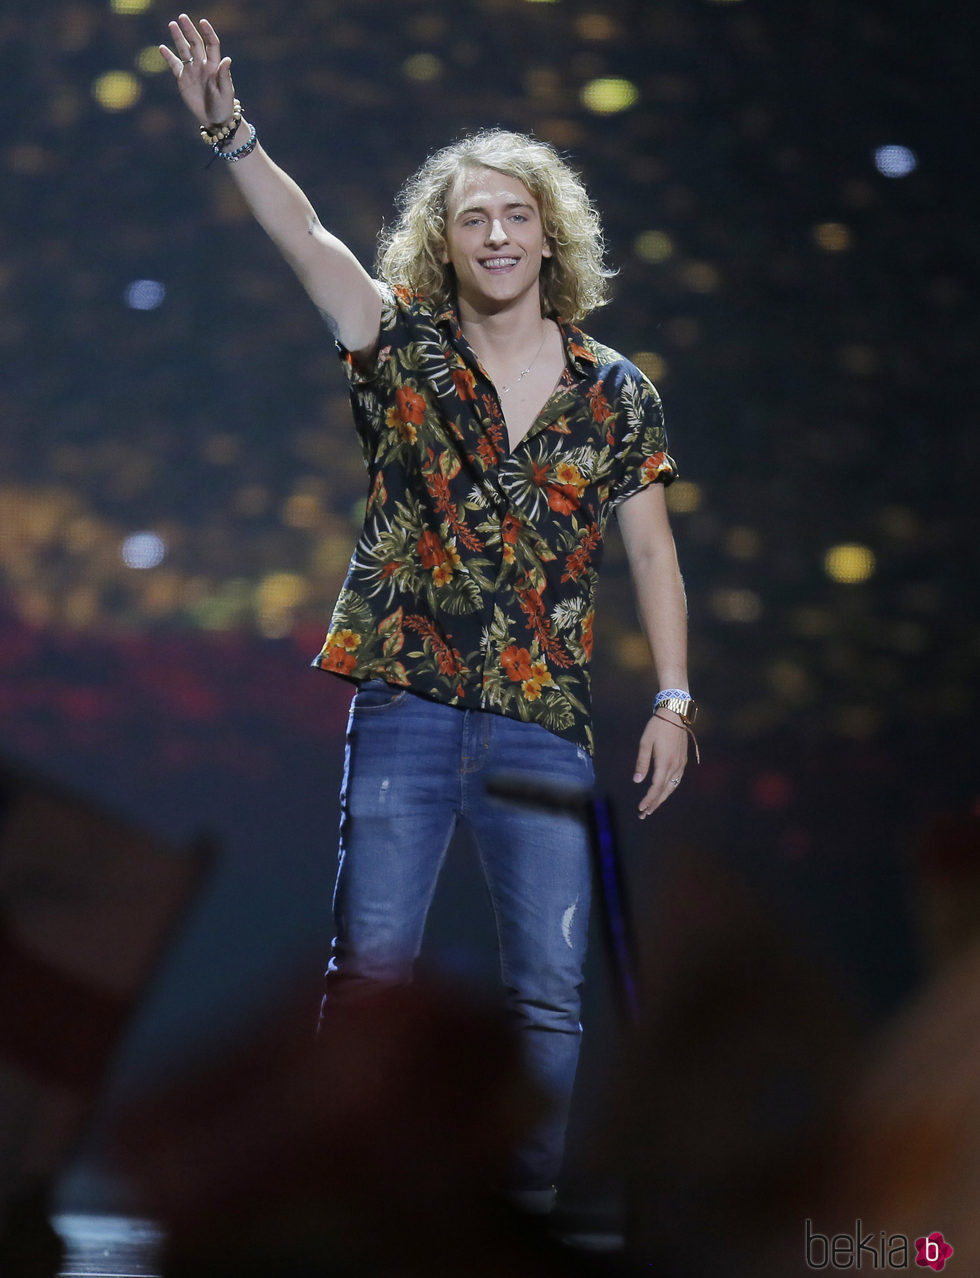 Manel Navarro al finalizar su actuación en la final del Festival de Eurovisión 2017